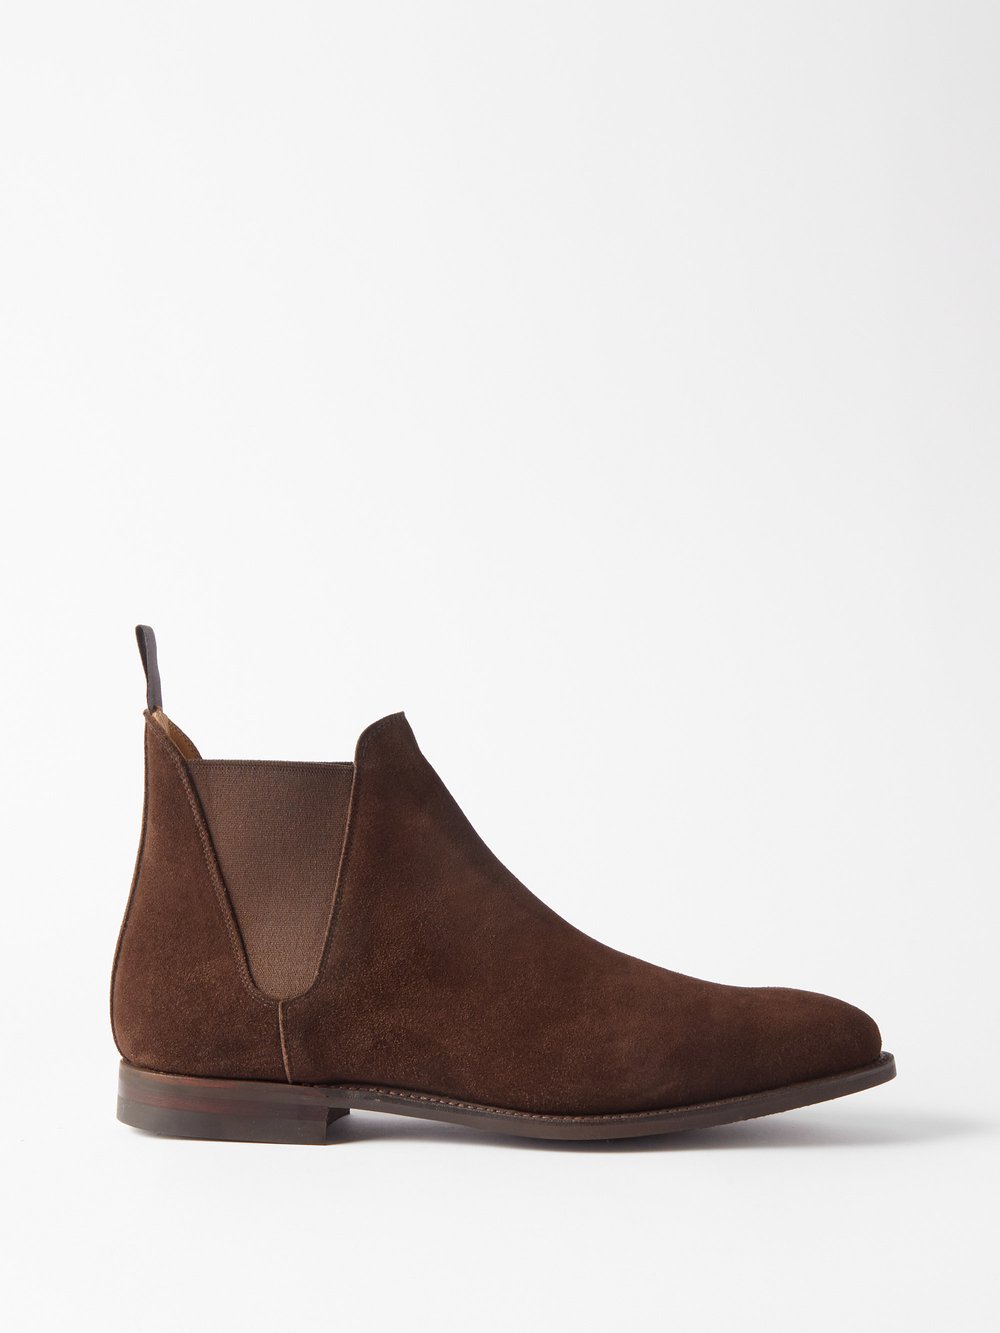 Замшевые ботинки челси Crockett & Jones, коричневый коричневые ботинки челси zucca media marsell